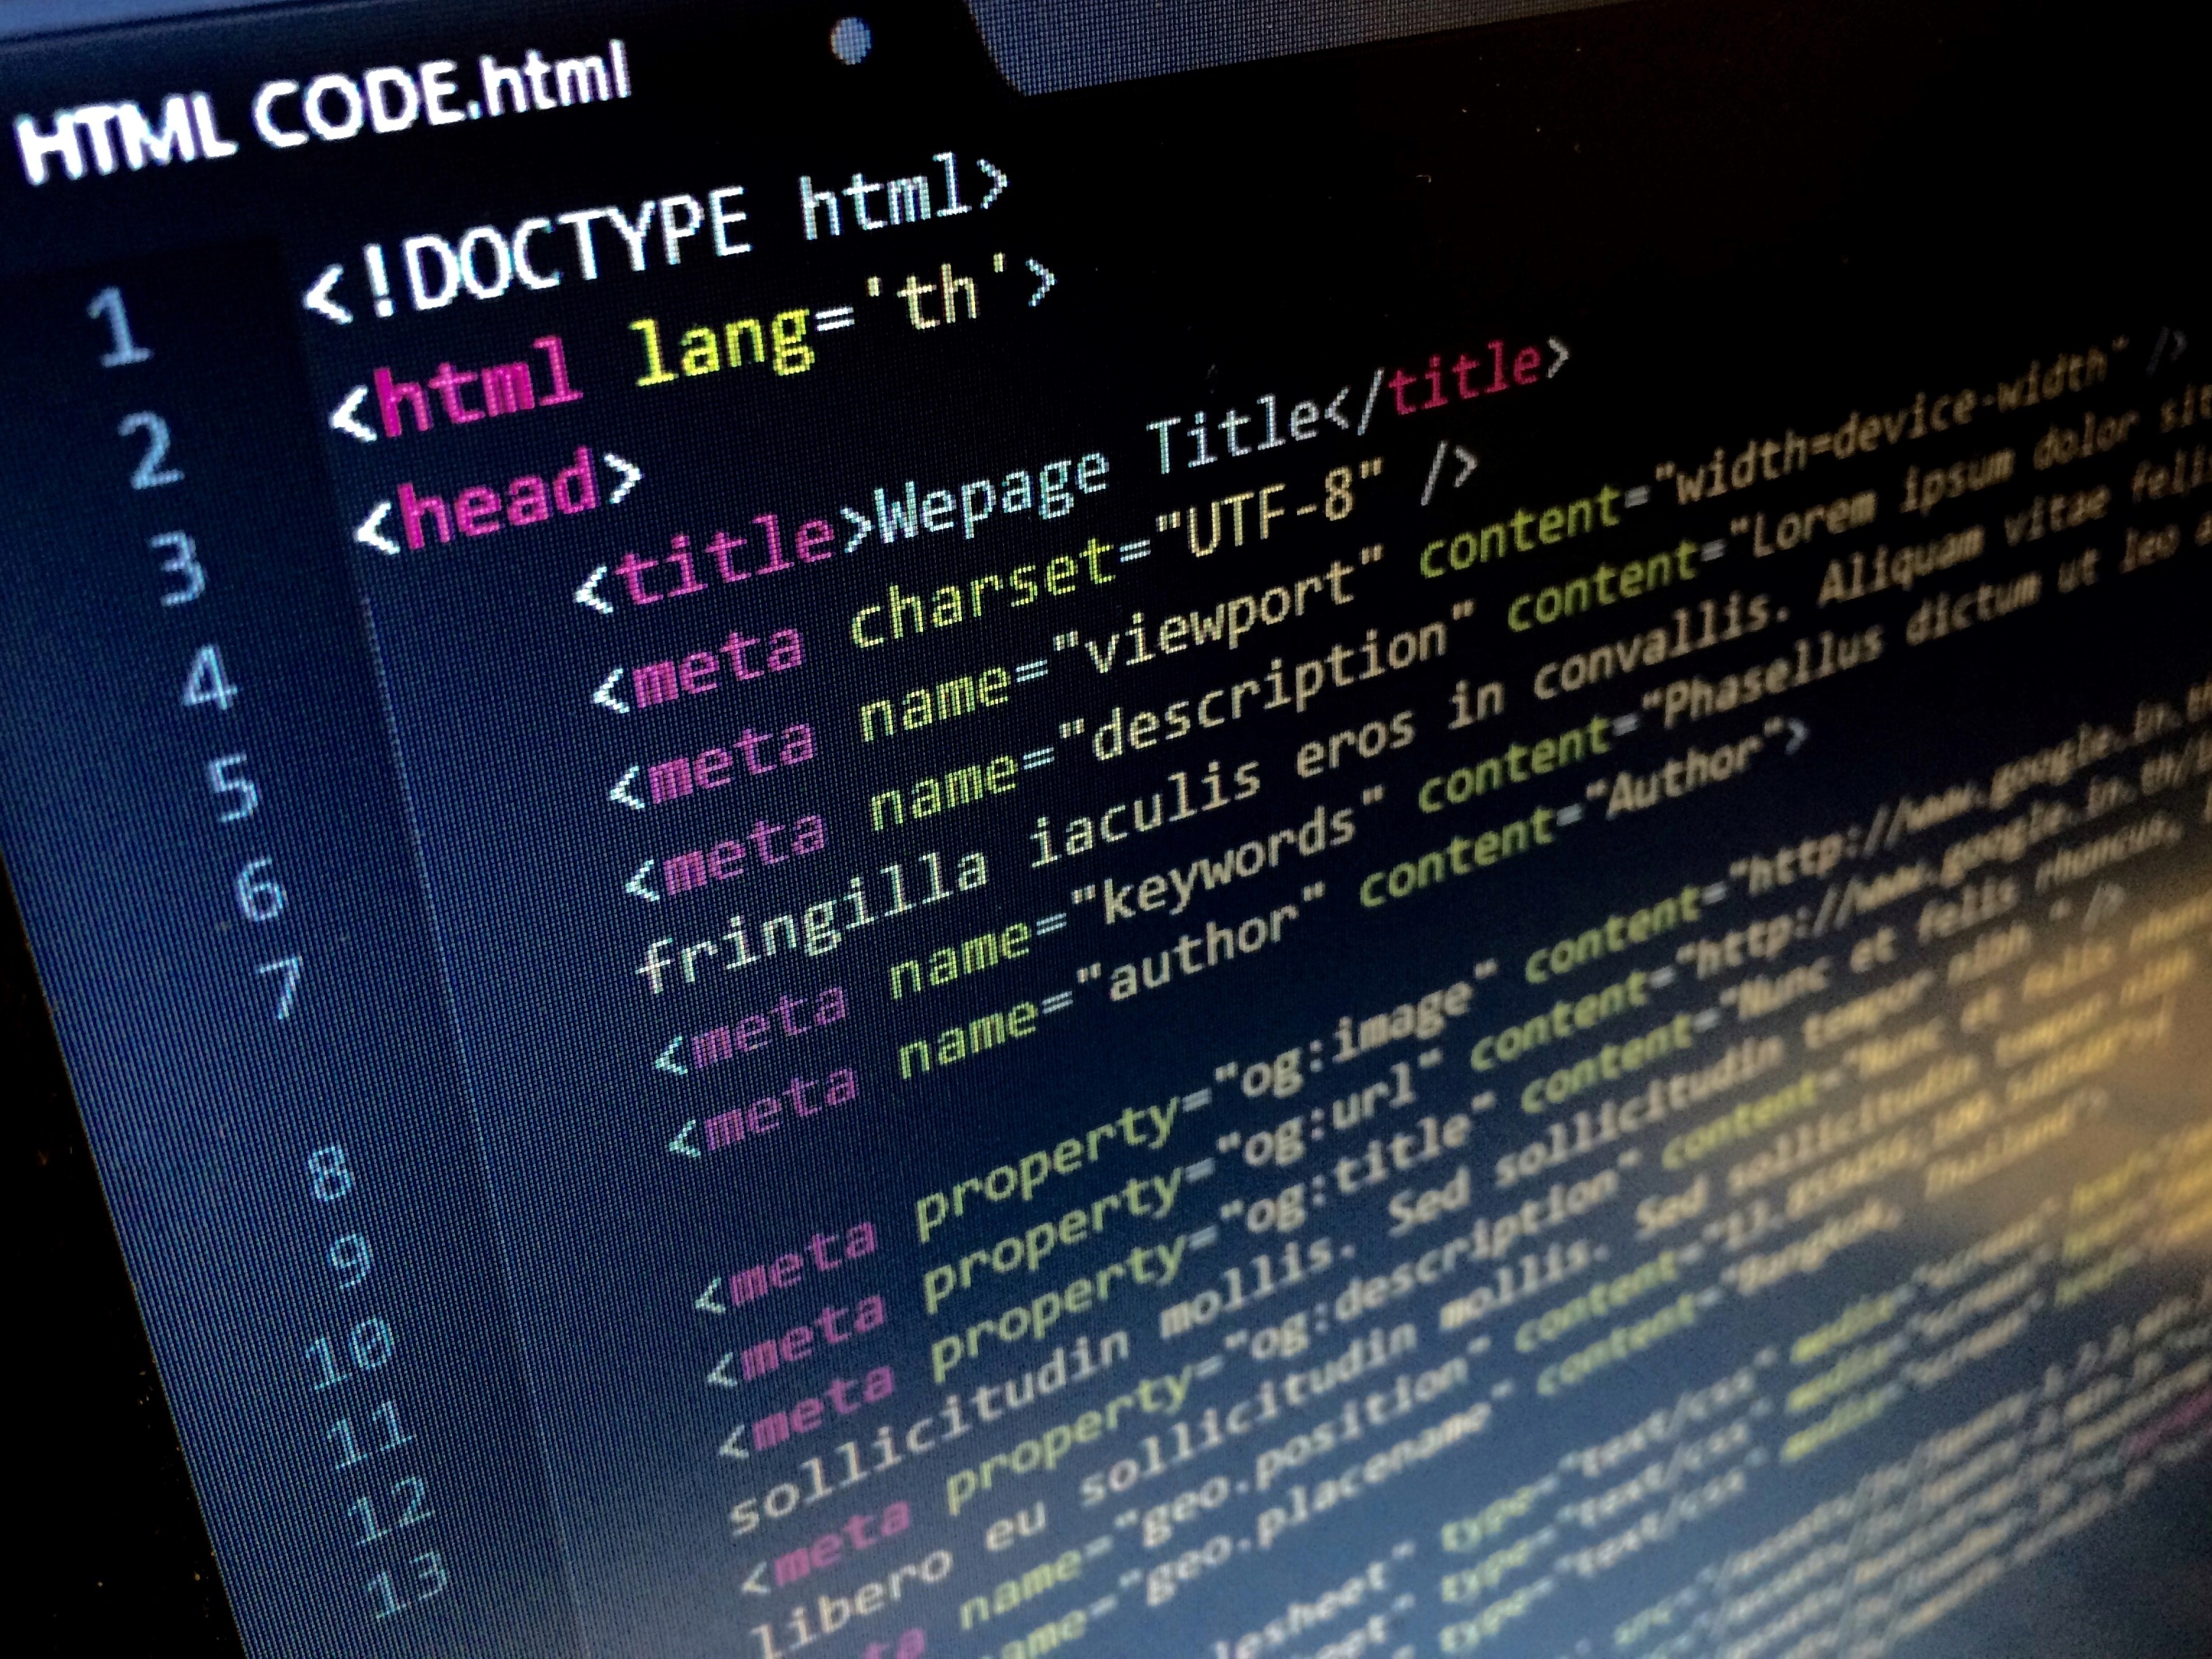 Код сайтов на html и css